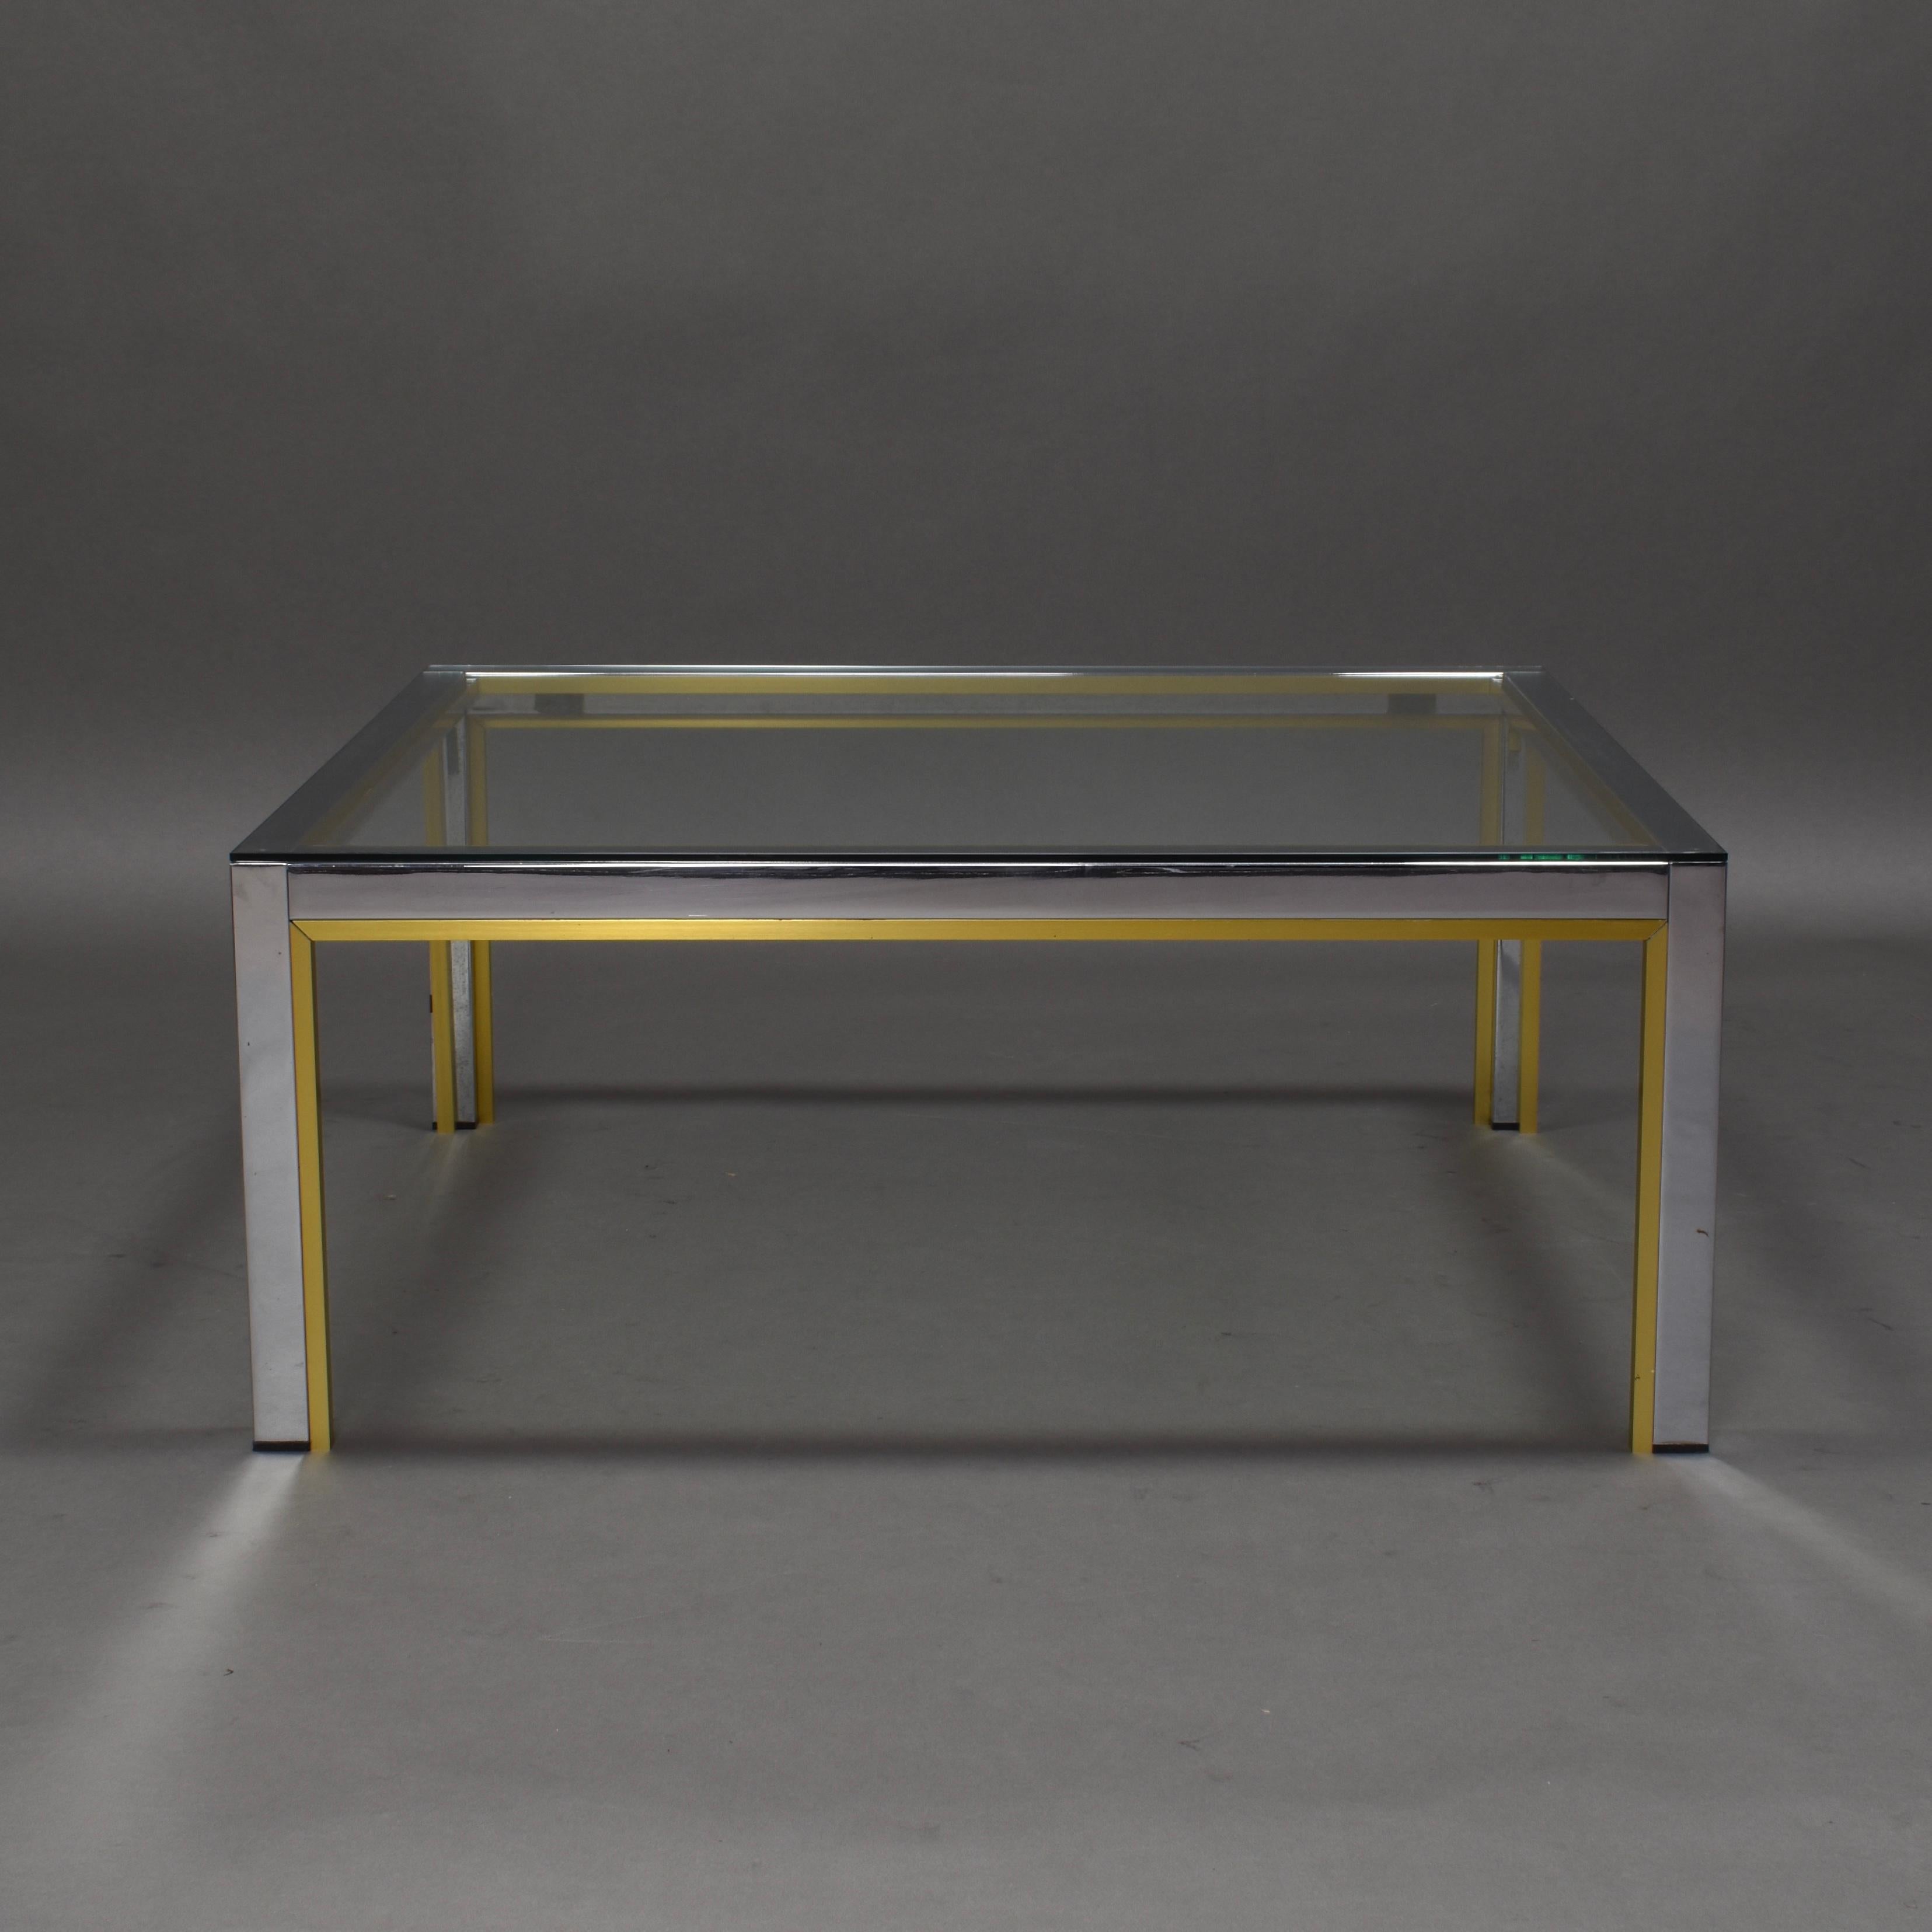 Belle table basse carrée du fabricant italien Romeo Rega.
La table est fabriquée en aluminium chromé et doré avec un plateau en verre transparent.
Il est encore en très bon état avec quelques signes normaux d'âge et d'utilisation.